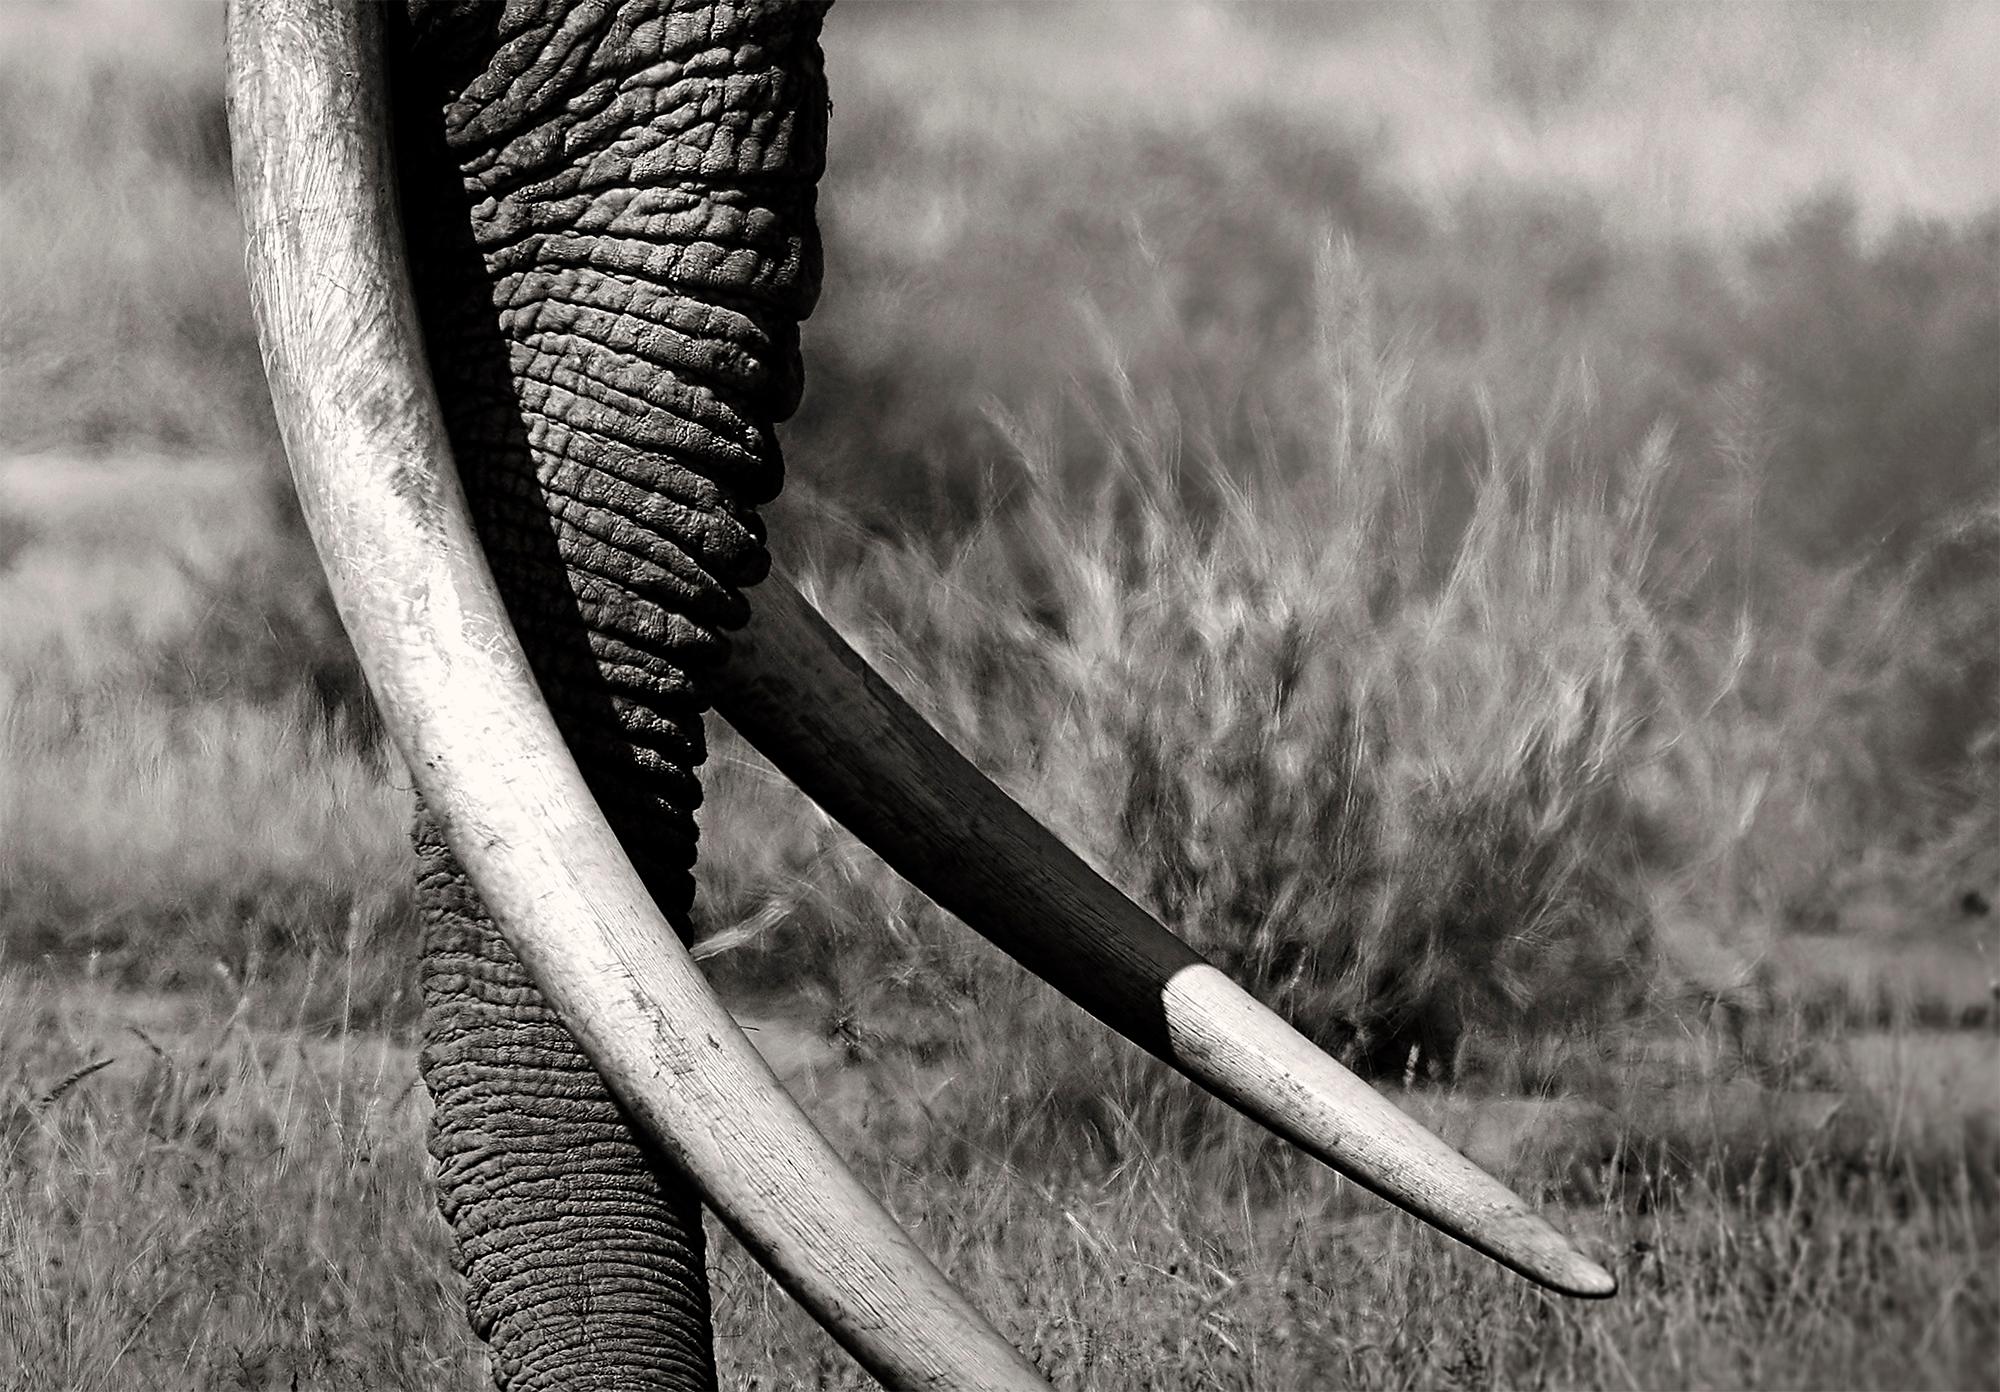 Ausgabe 5
Weitere Größen auf Anfrage

Tim - der Bewahrer des Friedens - war einer der letzten Super-Tusker in Kenia und der größte Elefantenbulle in Ostafrika. Dieses Bild zeigt ihn vor dem Kilimandscharo. Eine Hommage an die Ikonen Afrikas.

Seit